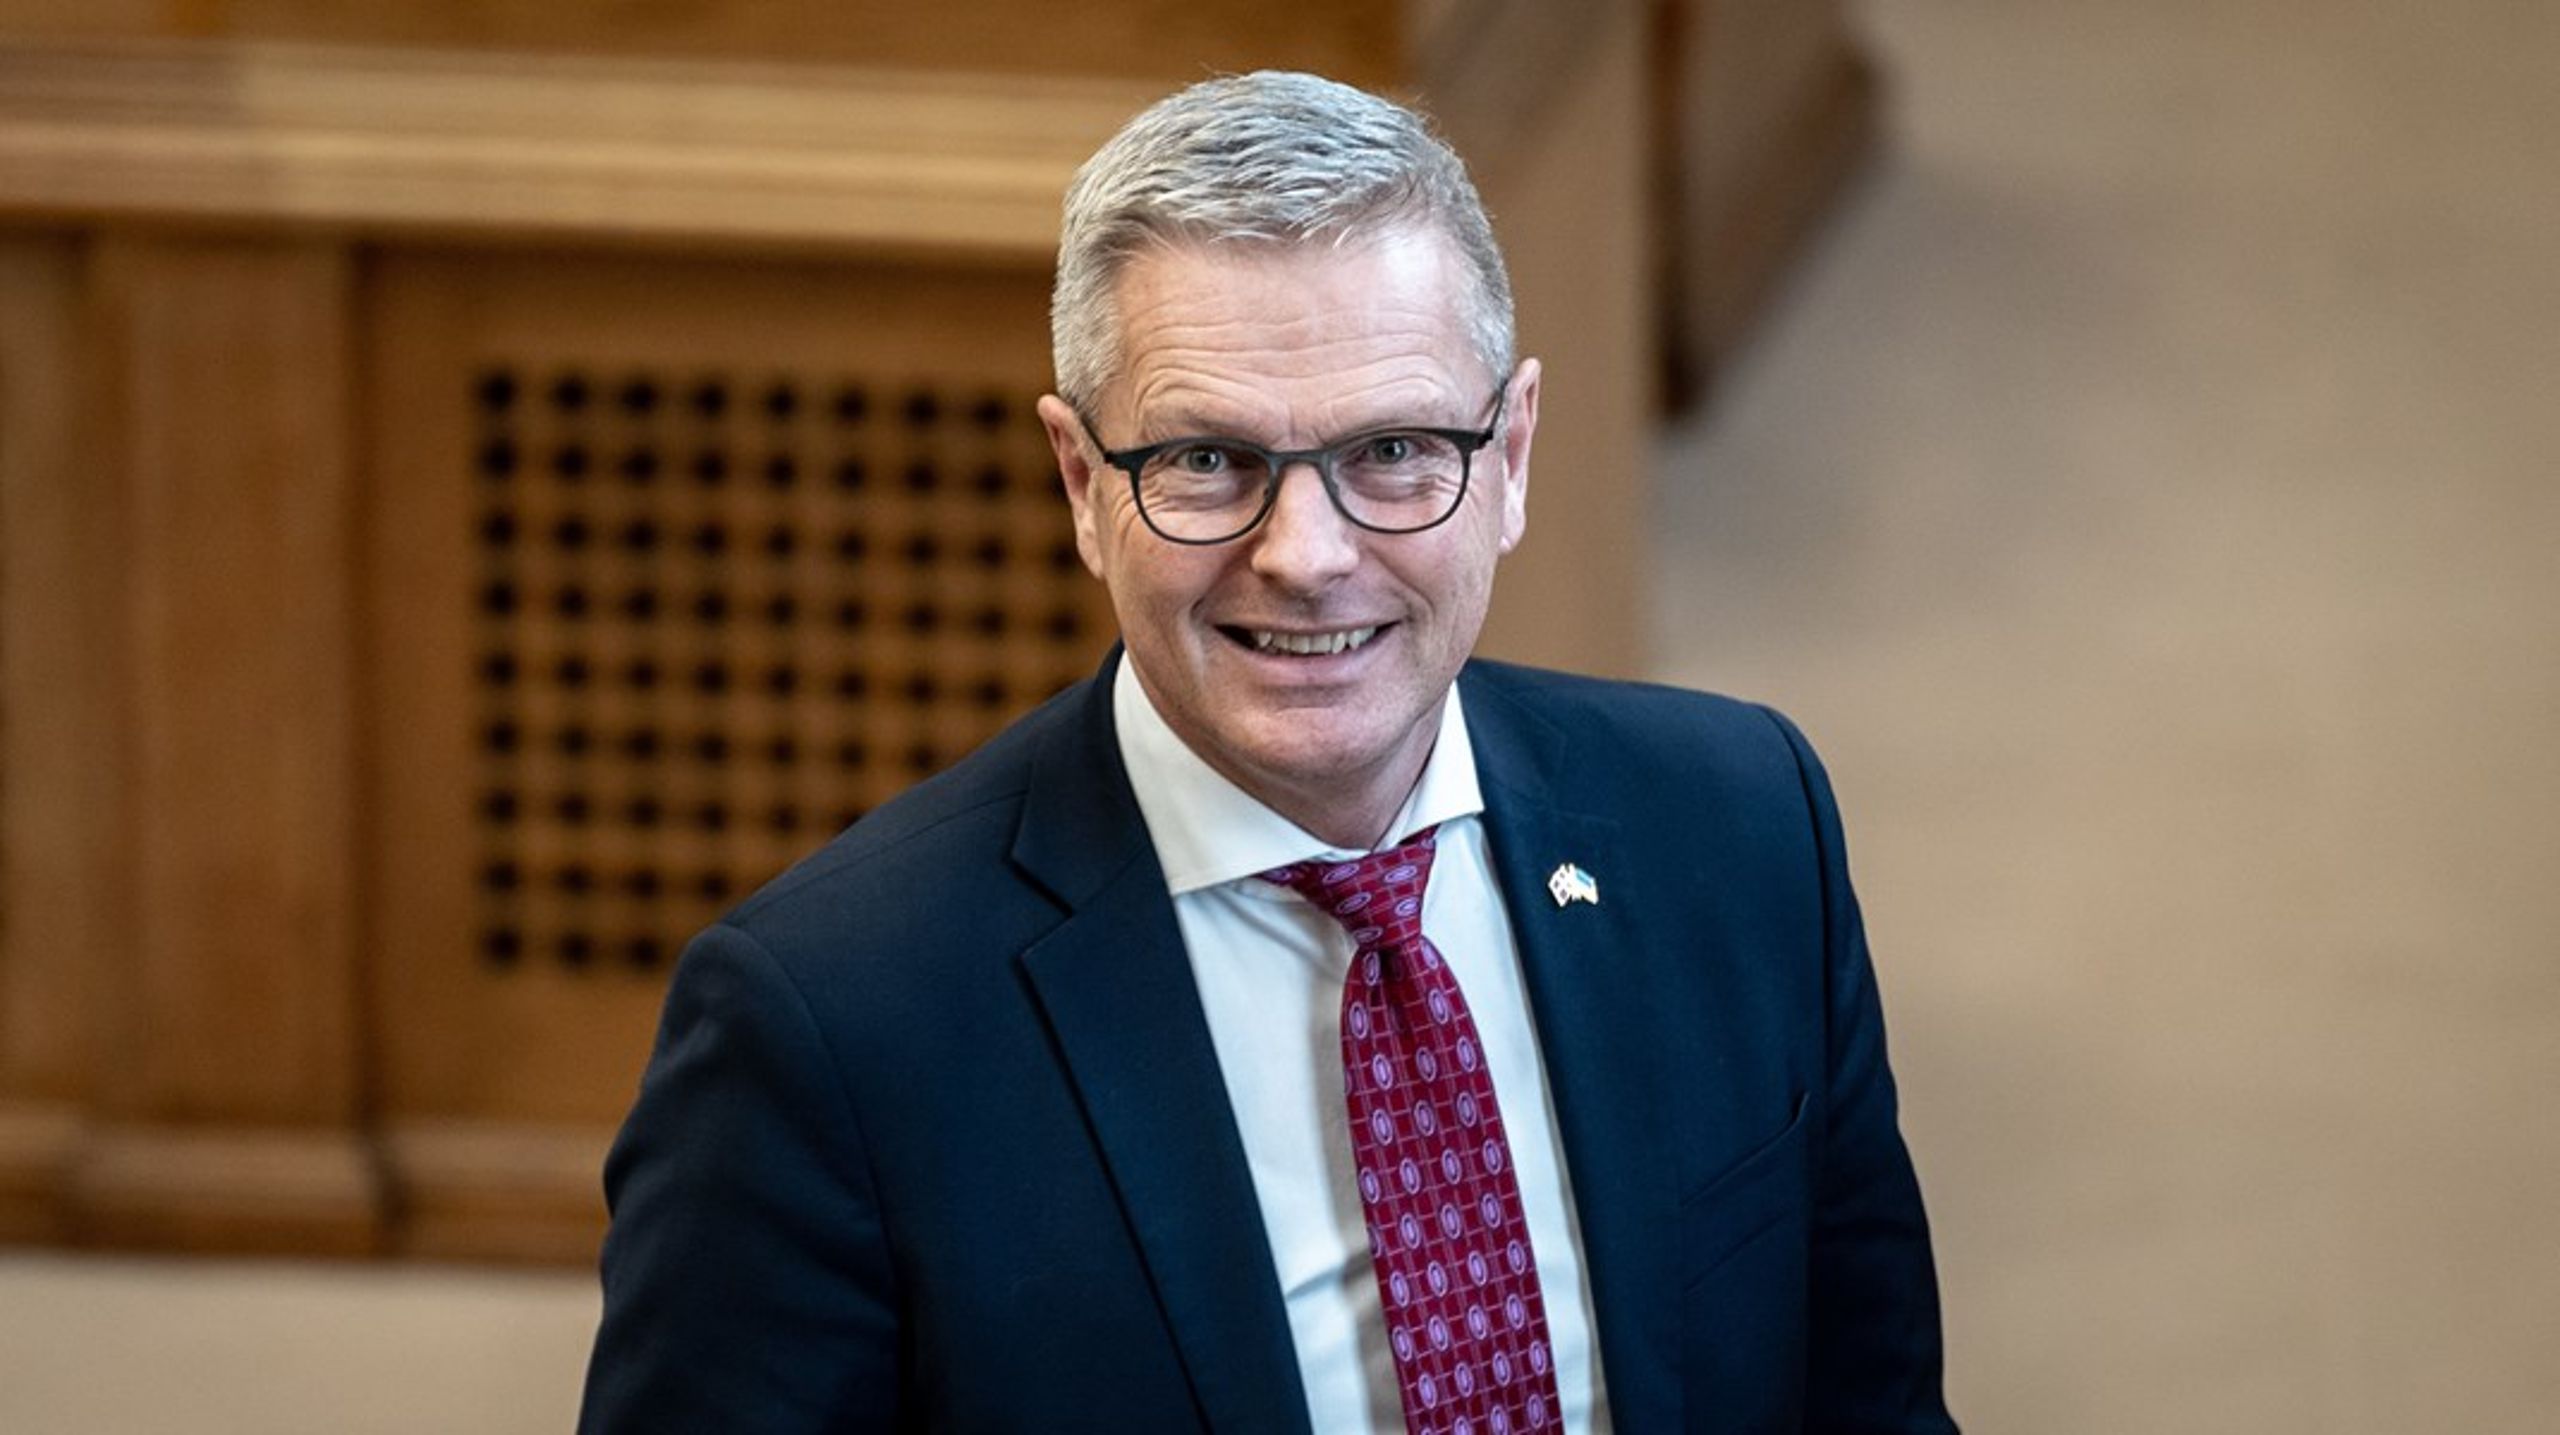 Forhenværende minister for&nbsp;for udviklingssamarbejde og minister for nordisk samarbejde, Flemming Møller Mortensen, er blandt de tre kandidater, der indtil videre har meldt sig som Aalborgs næste borgmester.